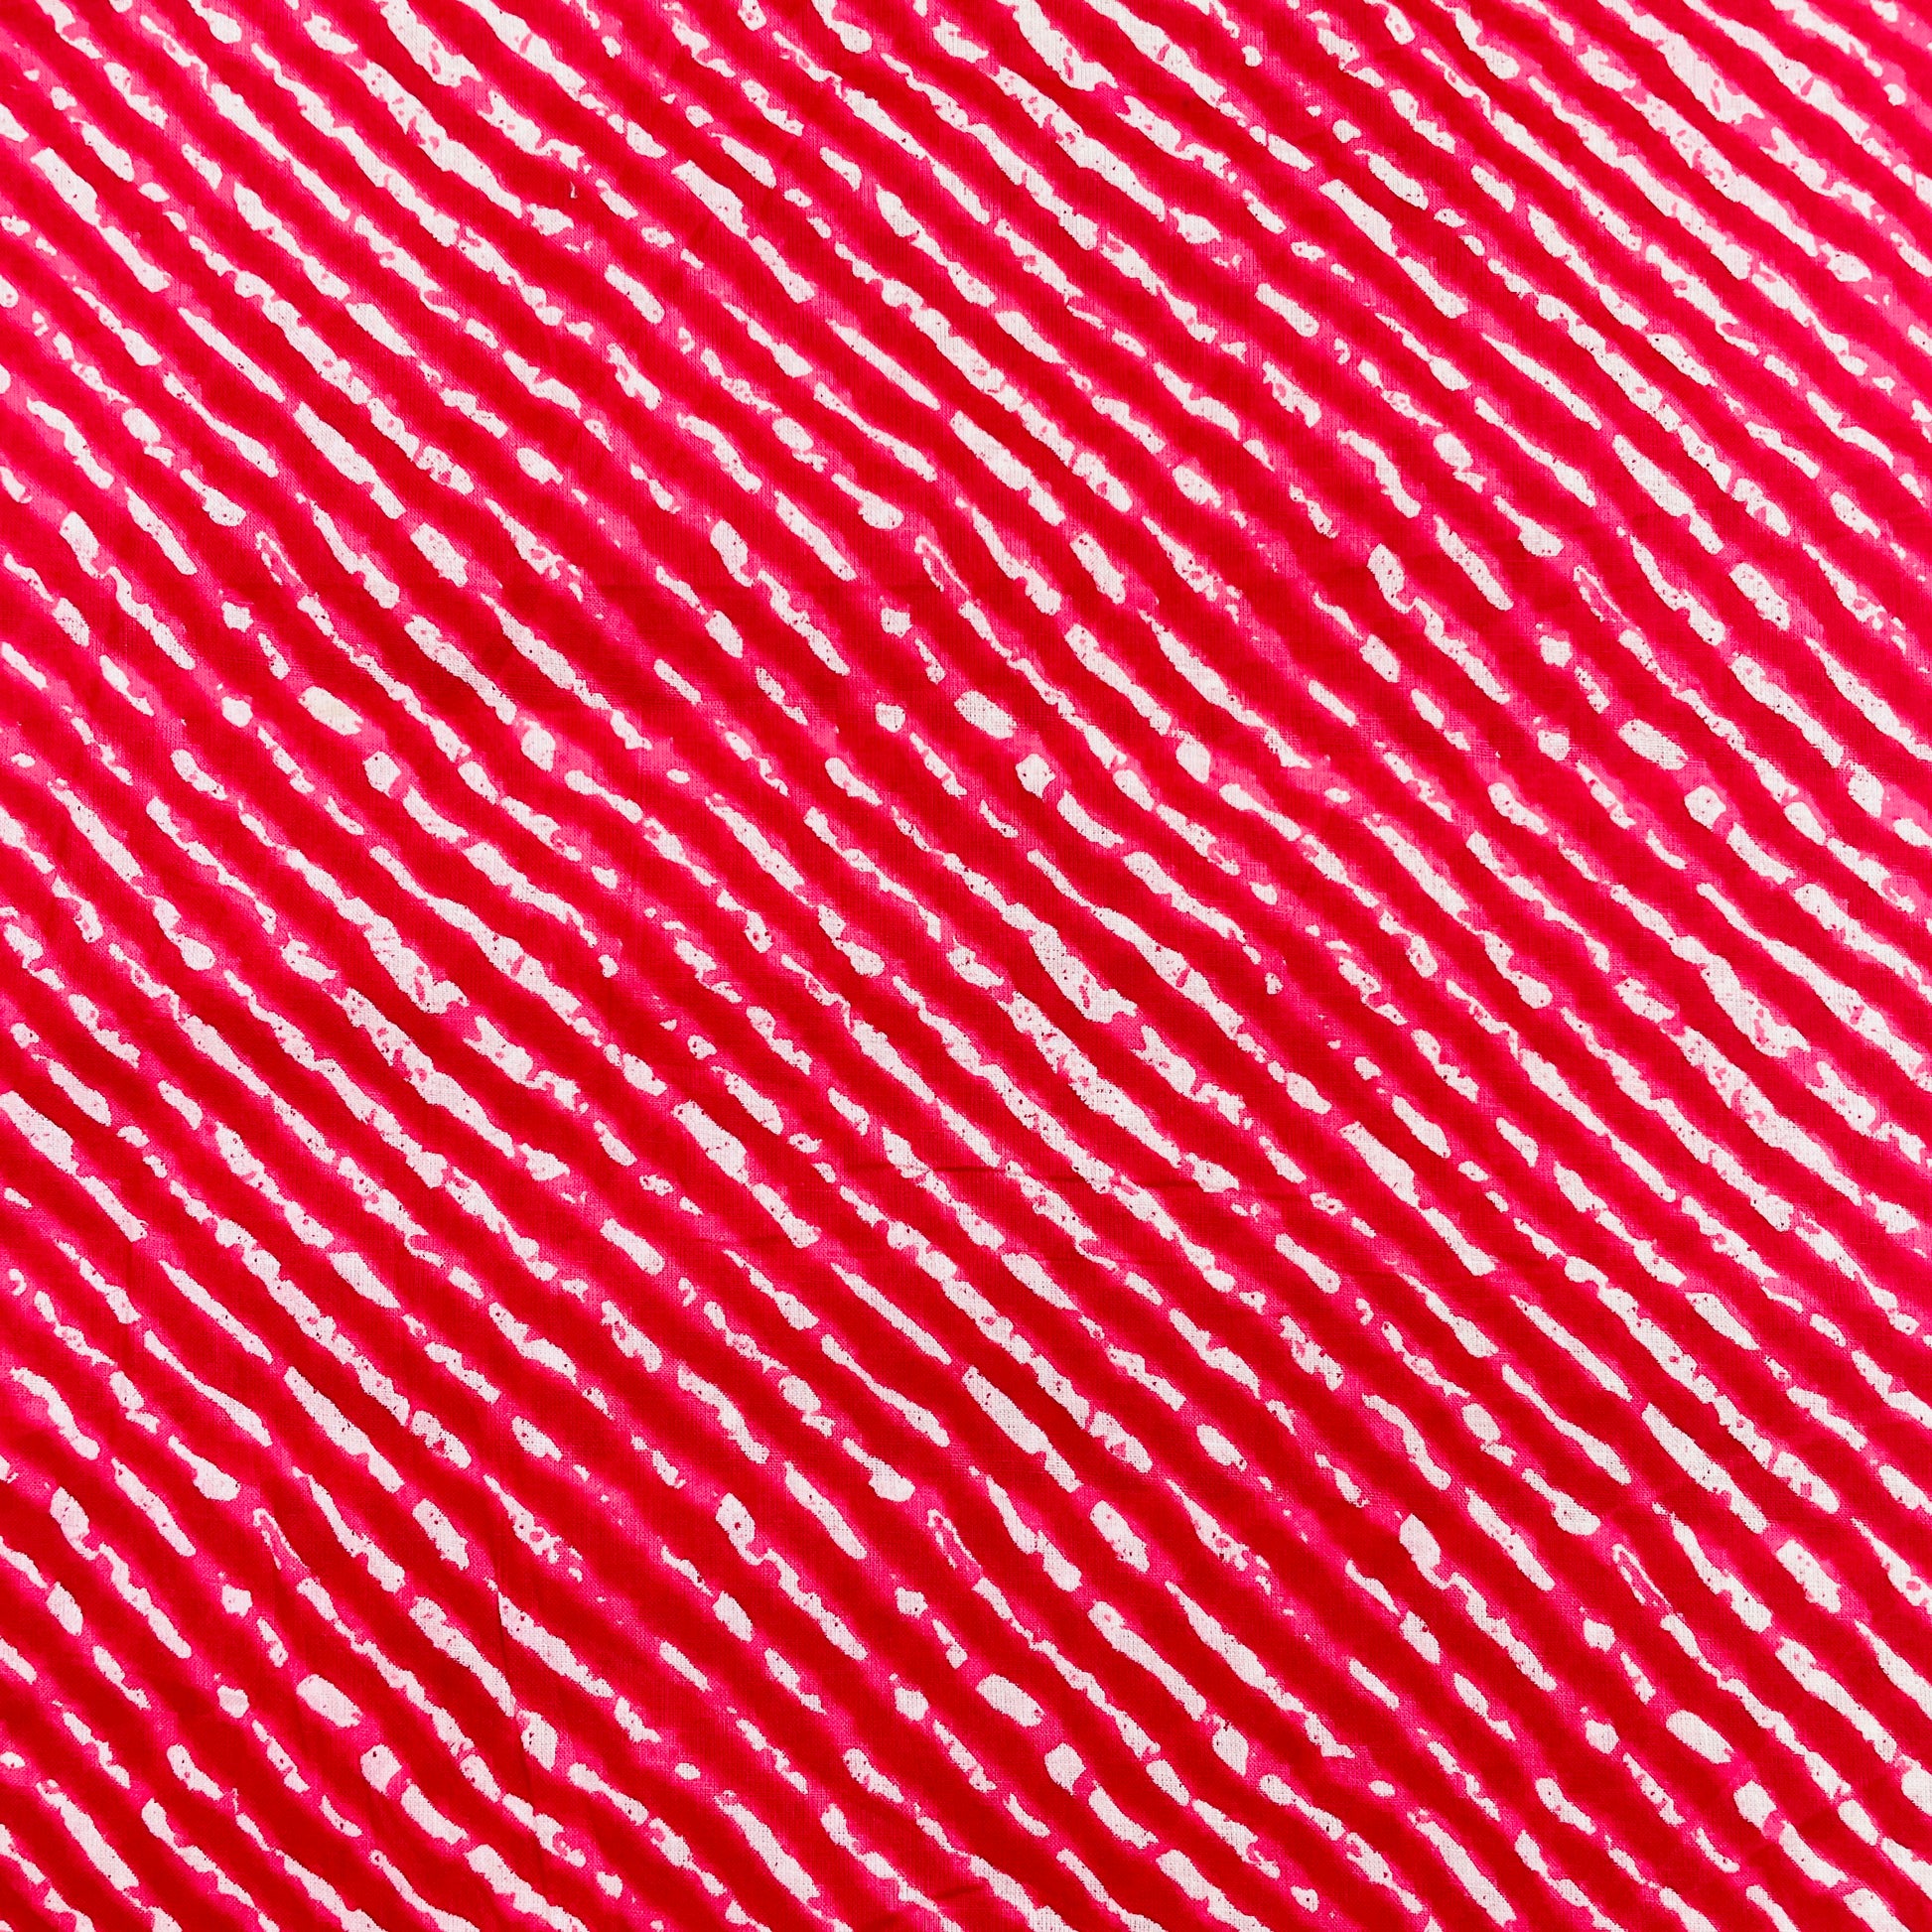 White & Red Lehriya Print Cotton Fabric - TradeUNO